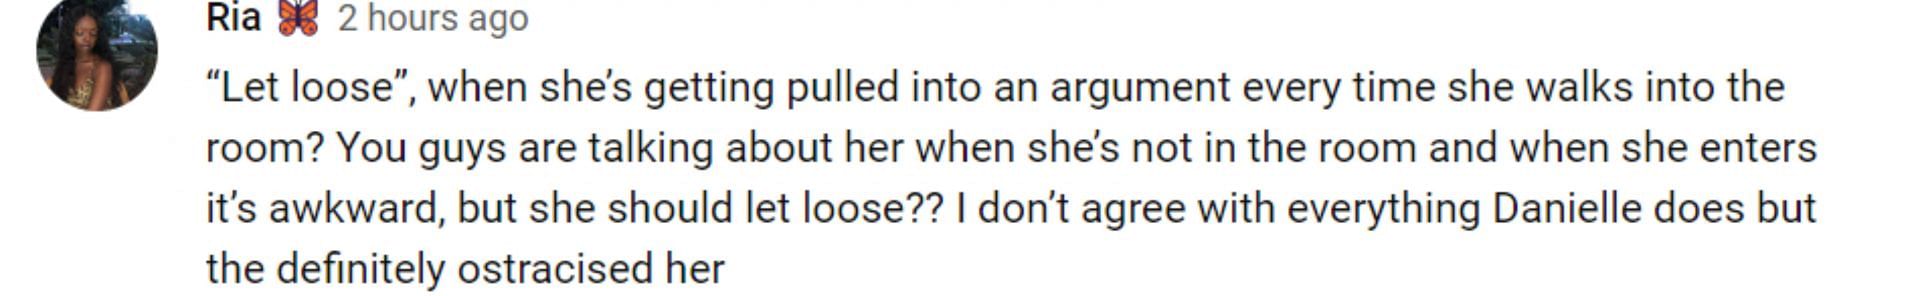 Fans slam RHONJ castmates for comments about Danielle (Image via YouTube)